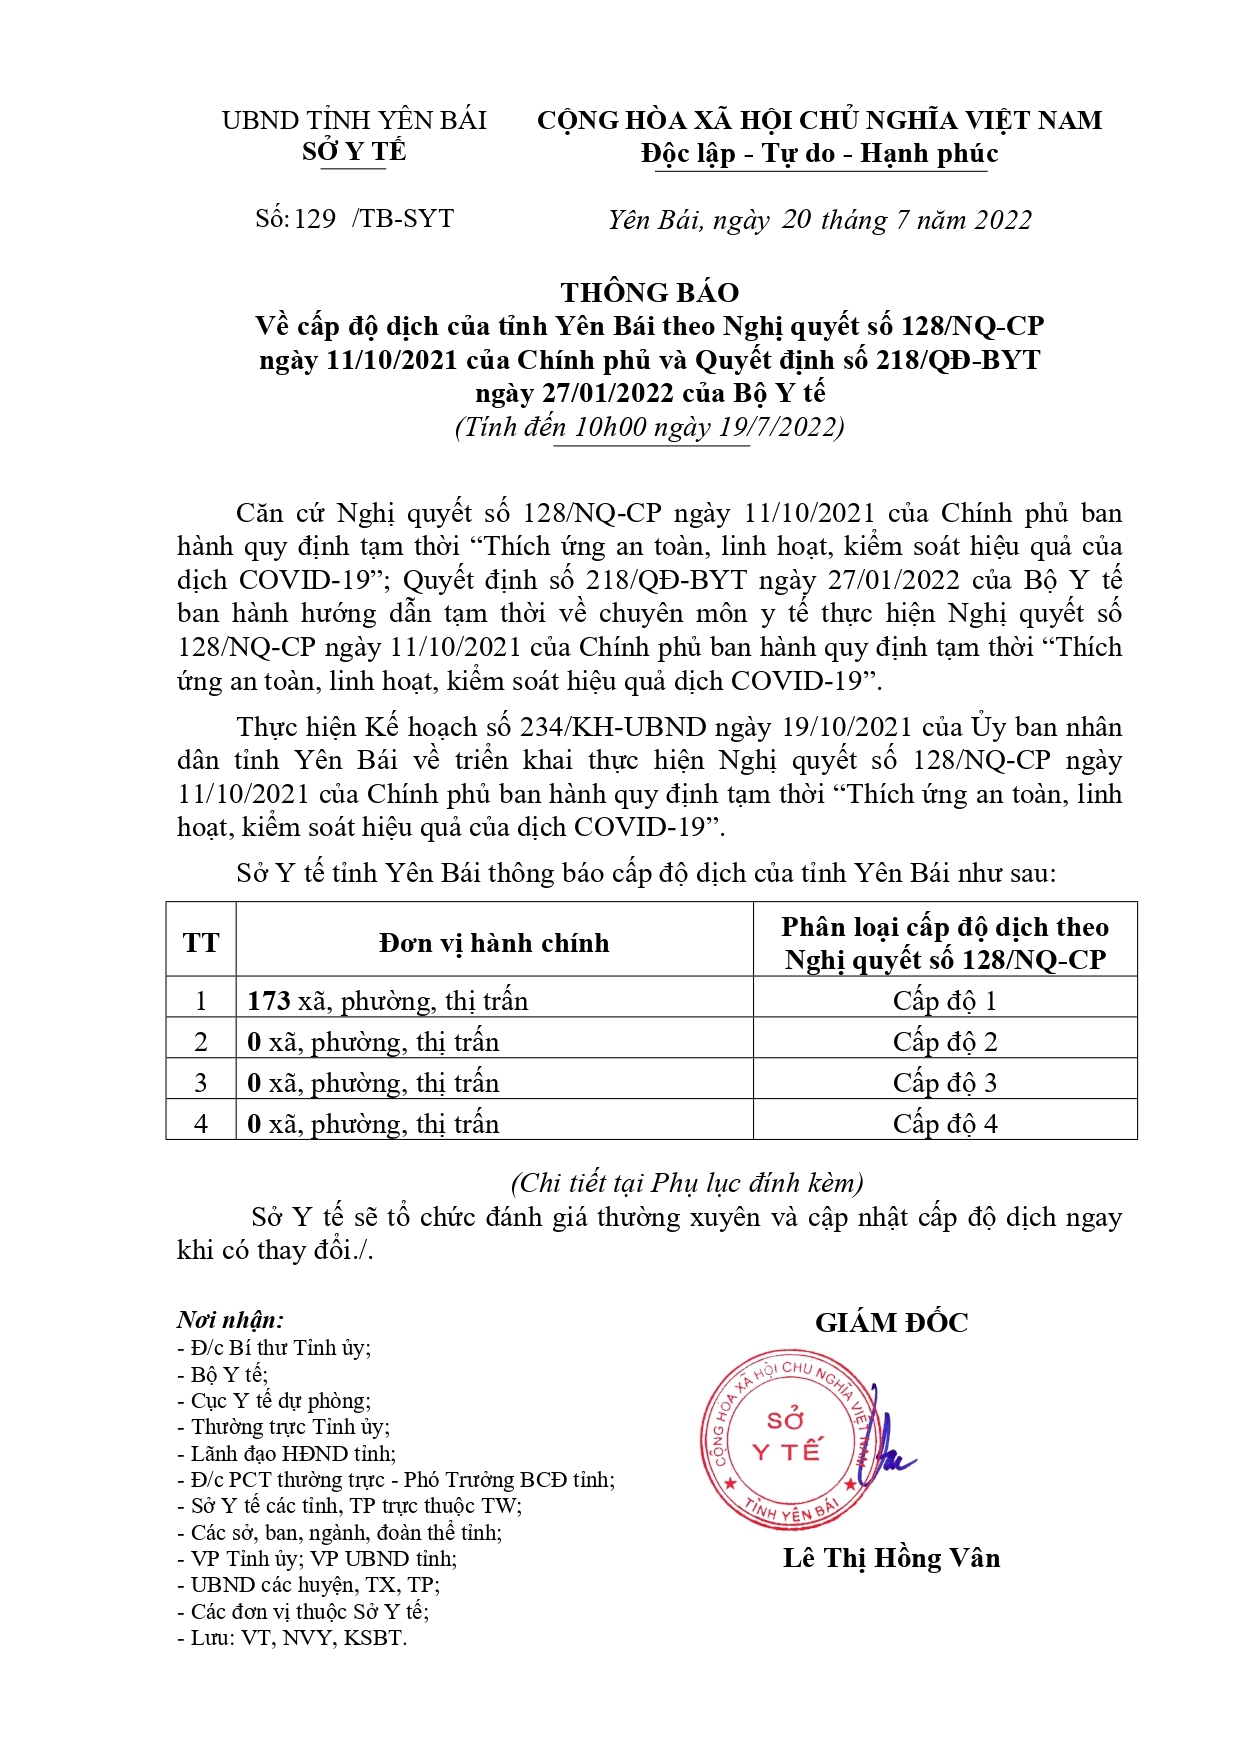 Thông báo cấp độ dịch của tỉnh Yên Bái (Tính đến ngày 19/07/2022)